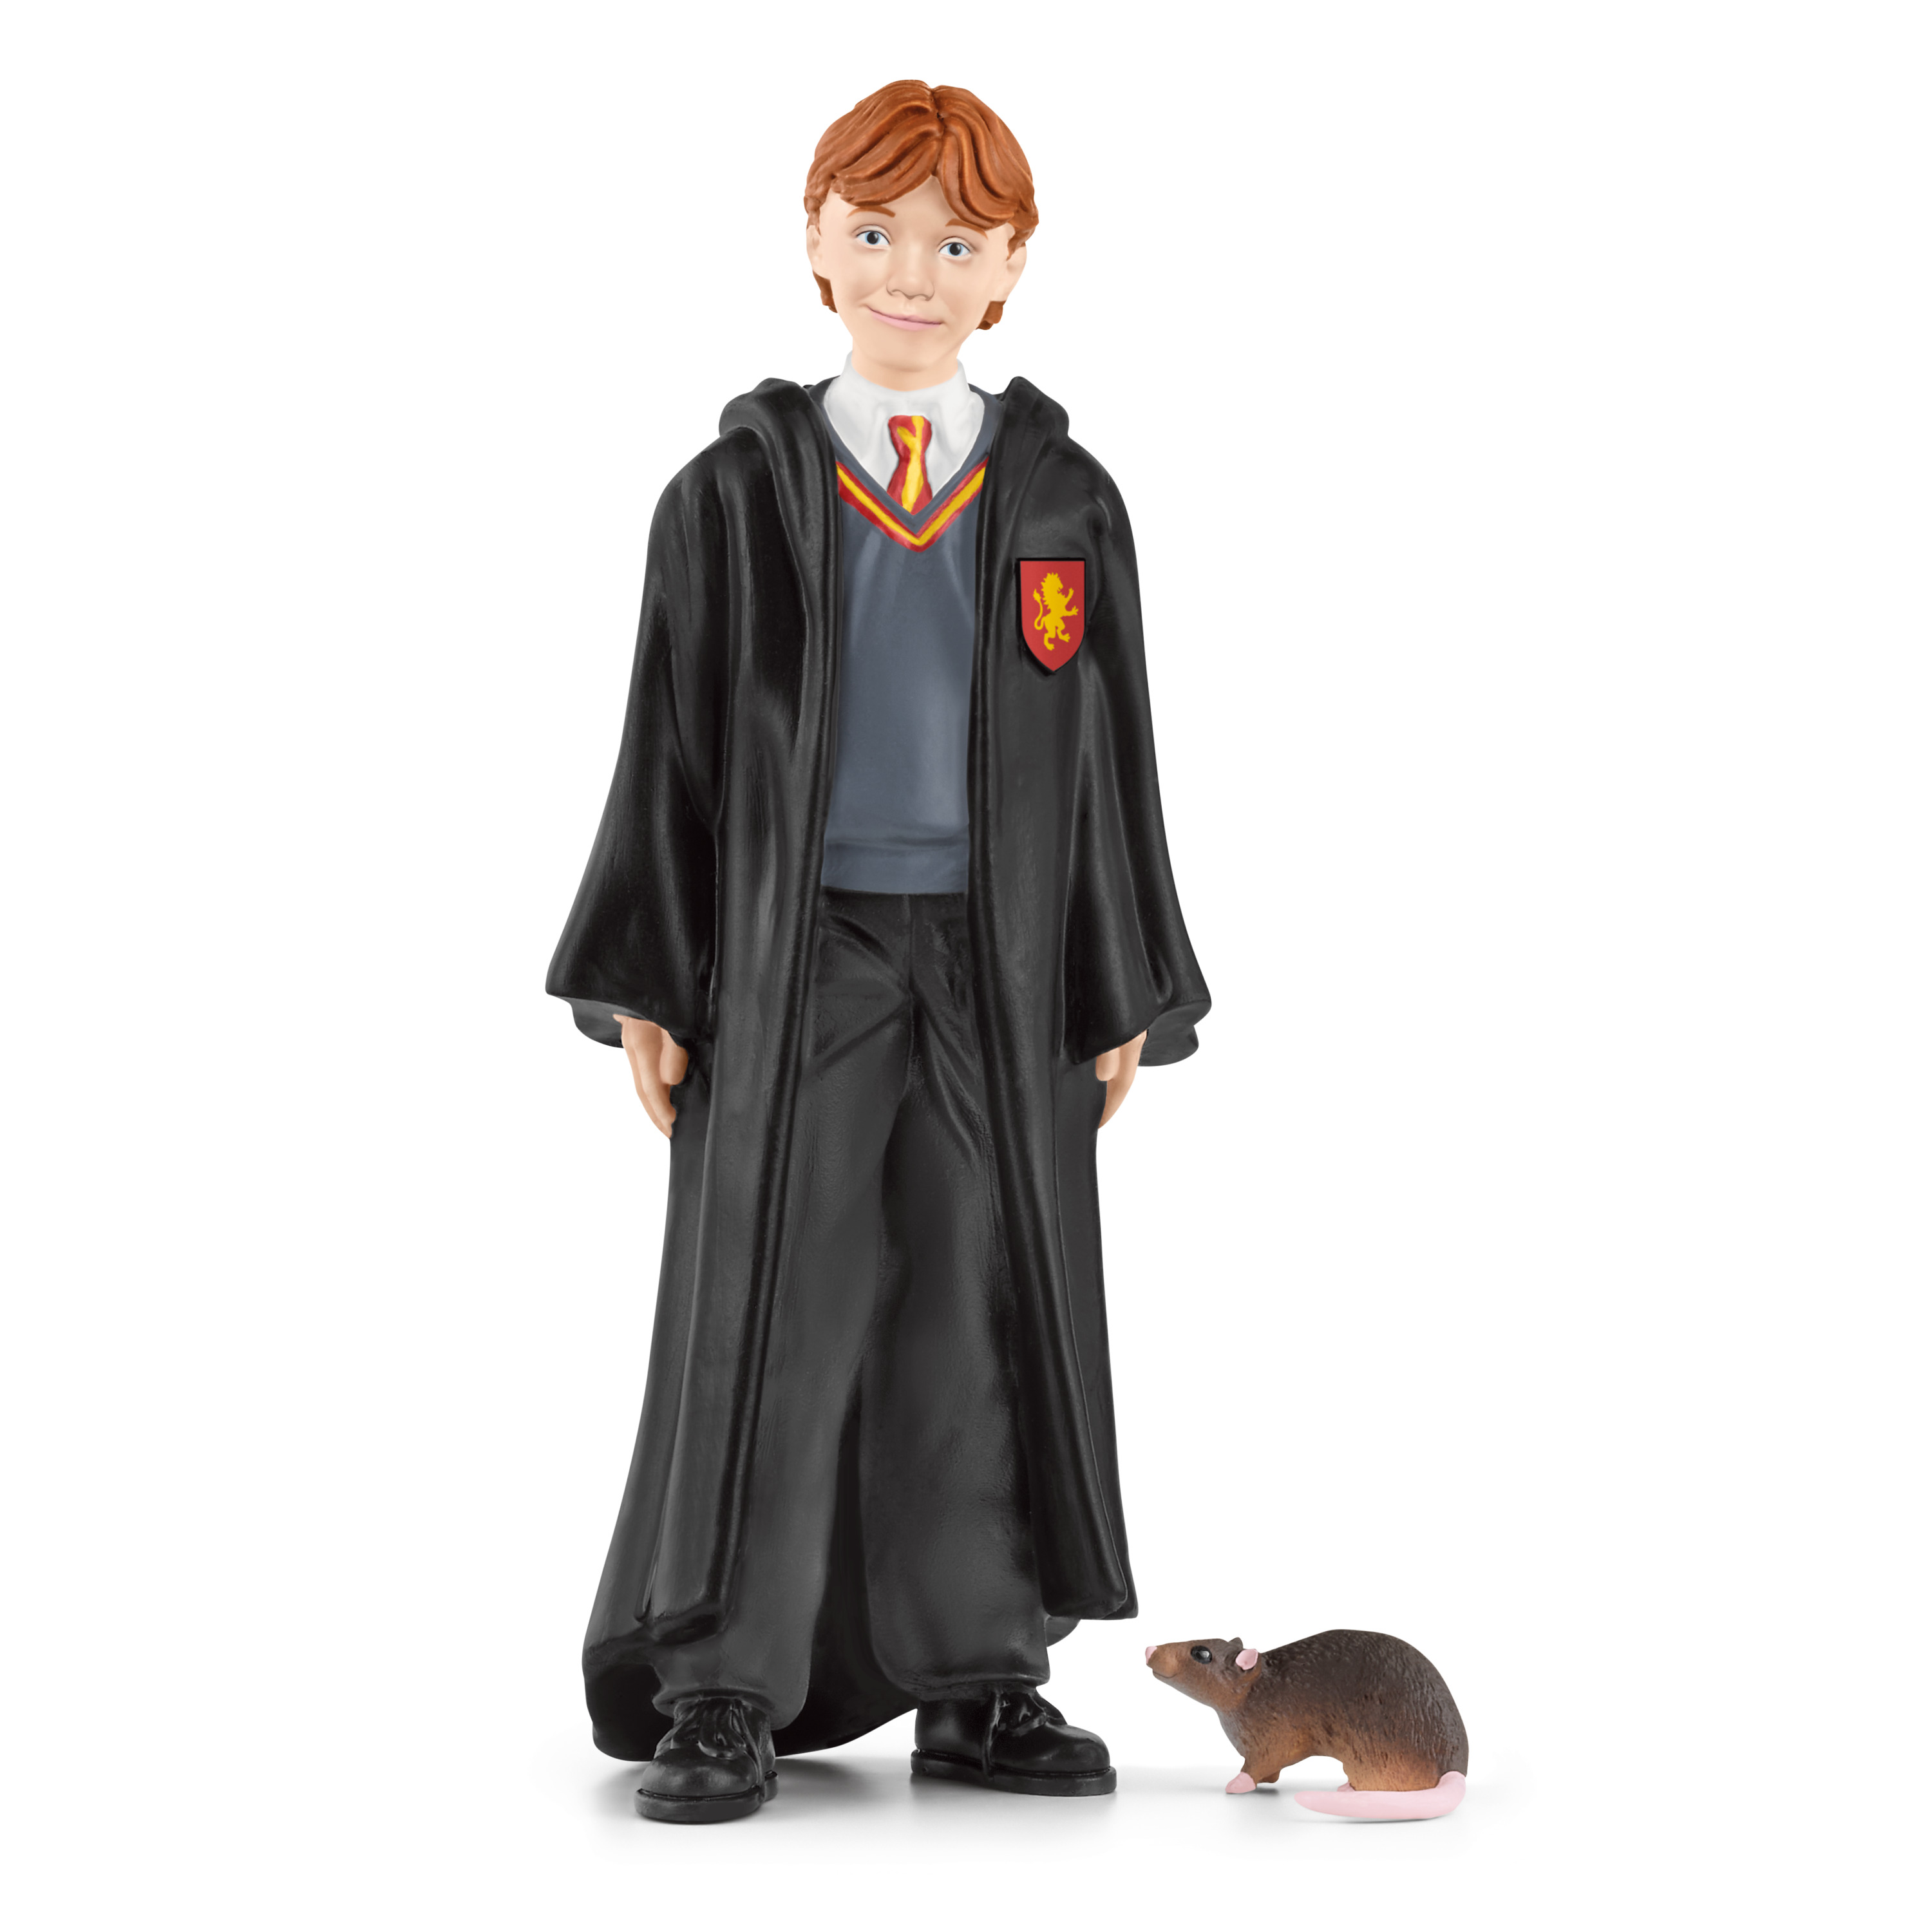 Ron Weasly & Krätze Figur aus den Harry Potter Filmen